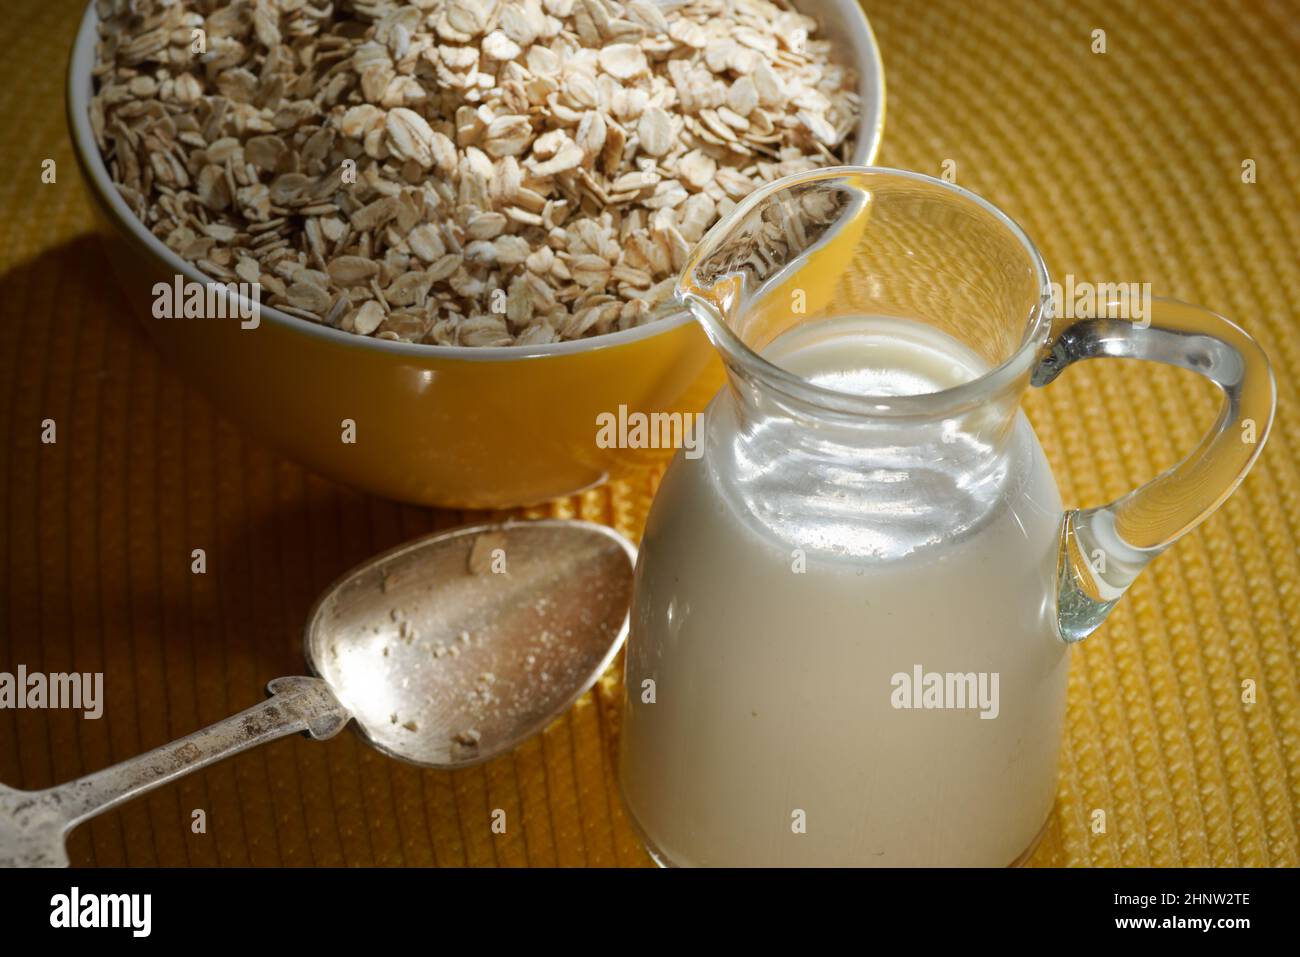 Flocons d'avoine dans un bol en bois, flocons d'avoine et tasse de lait sur la table. Une alimentation saine Banque D'Images